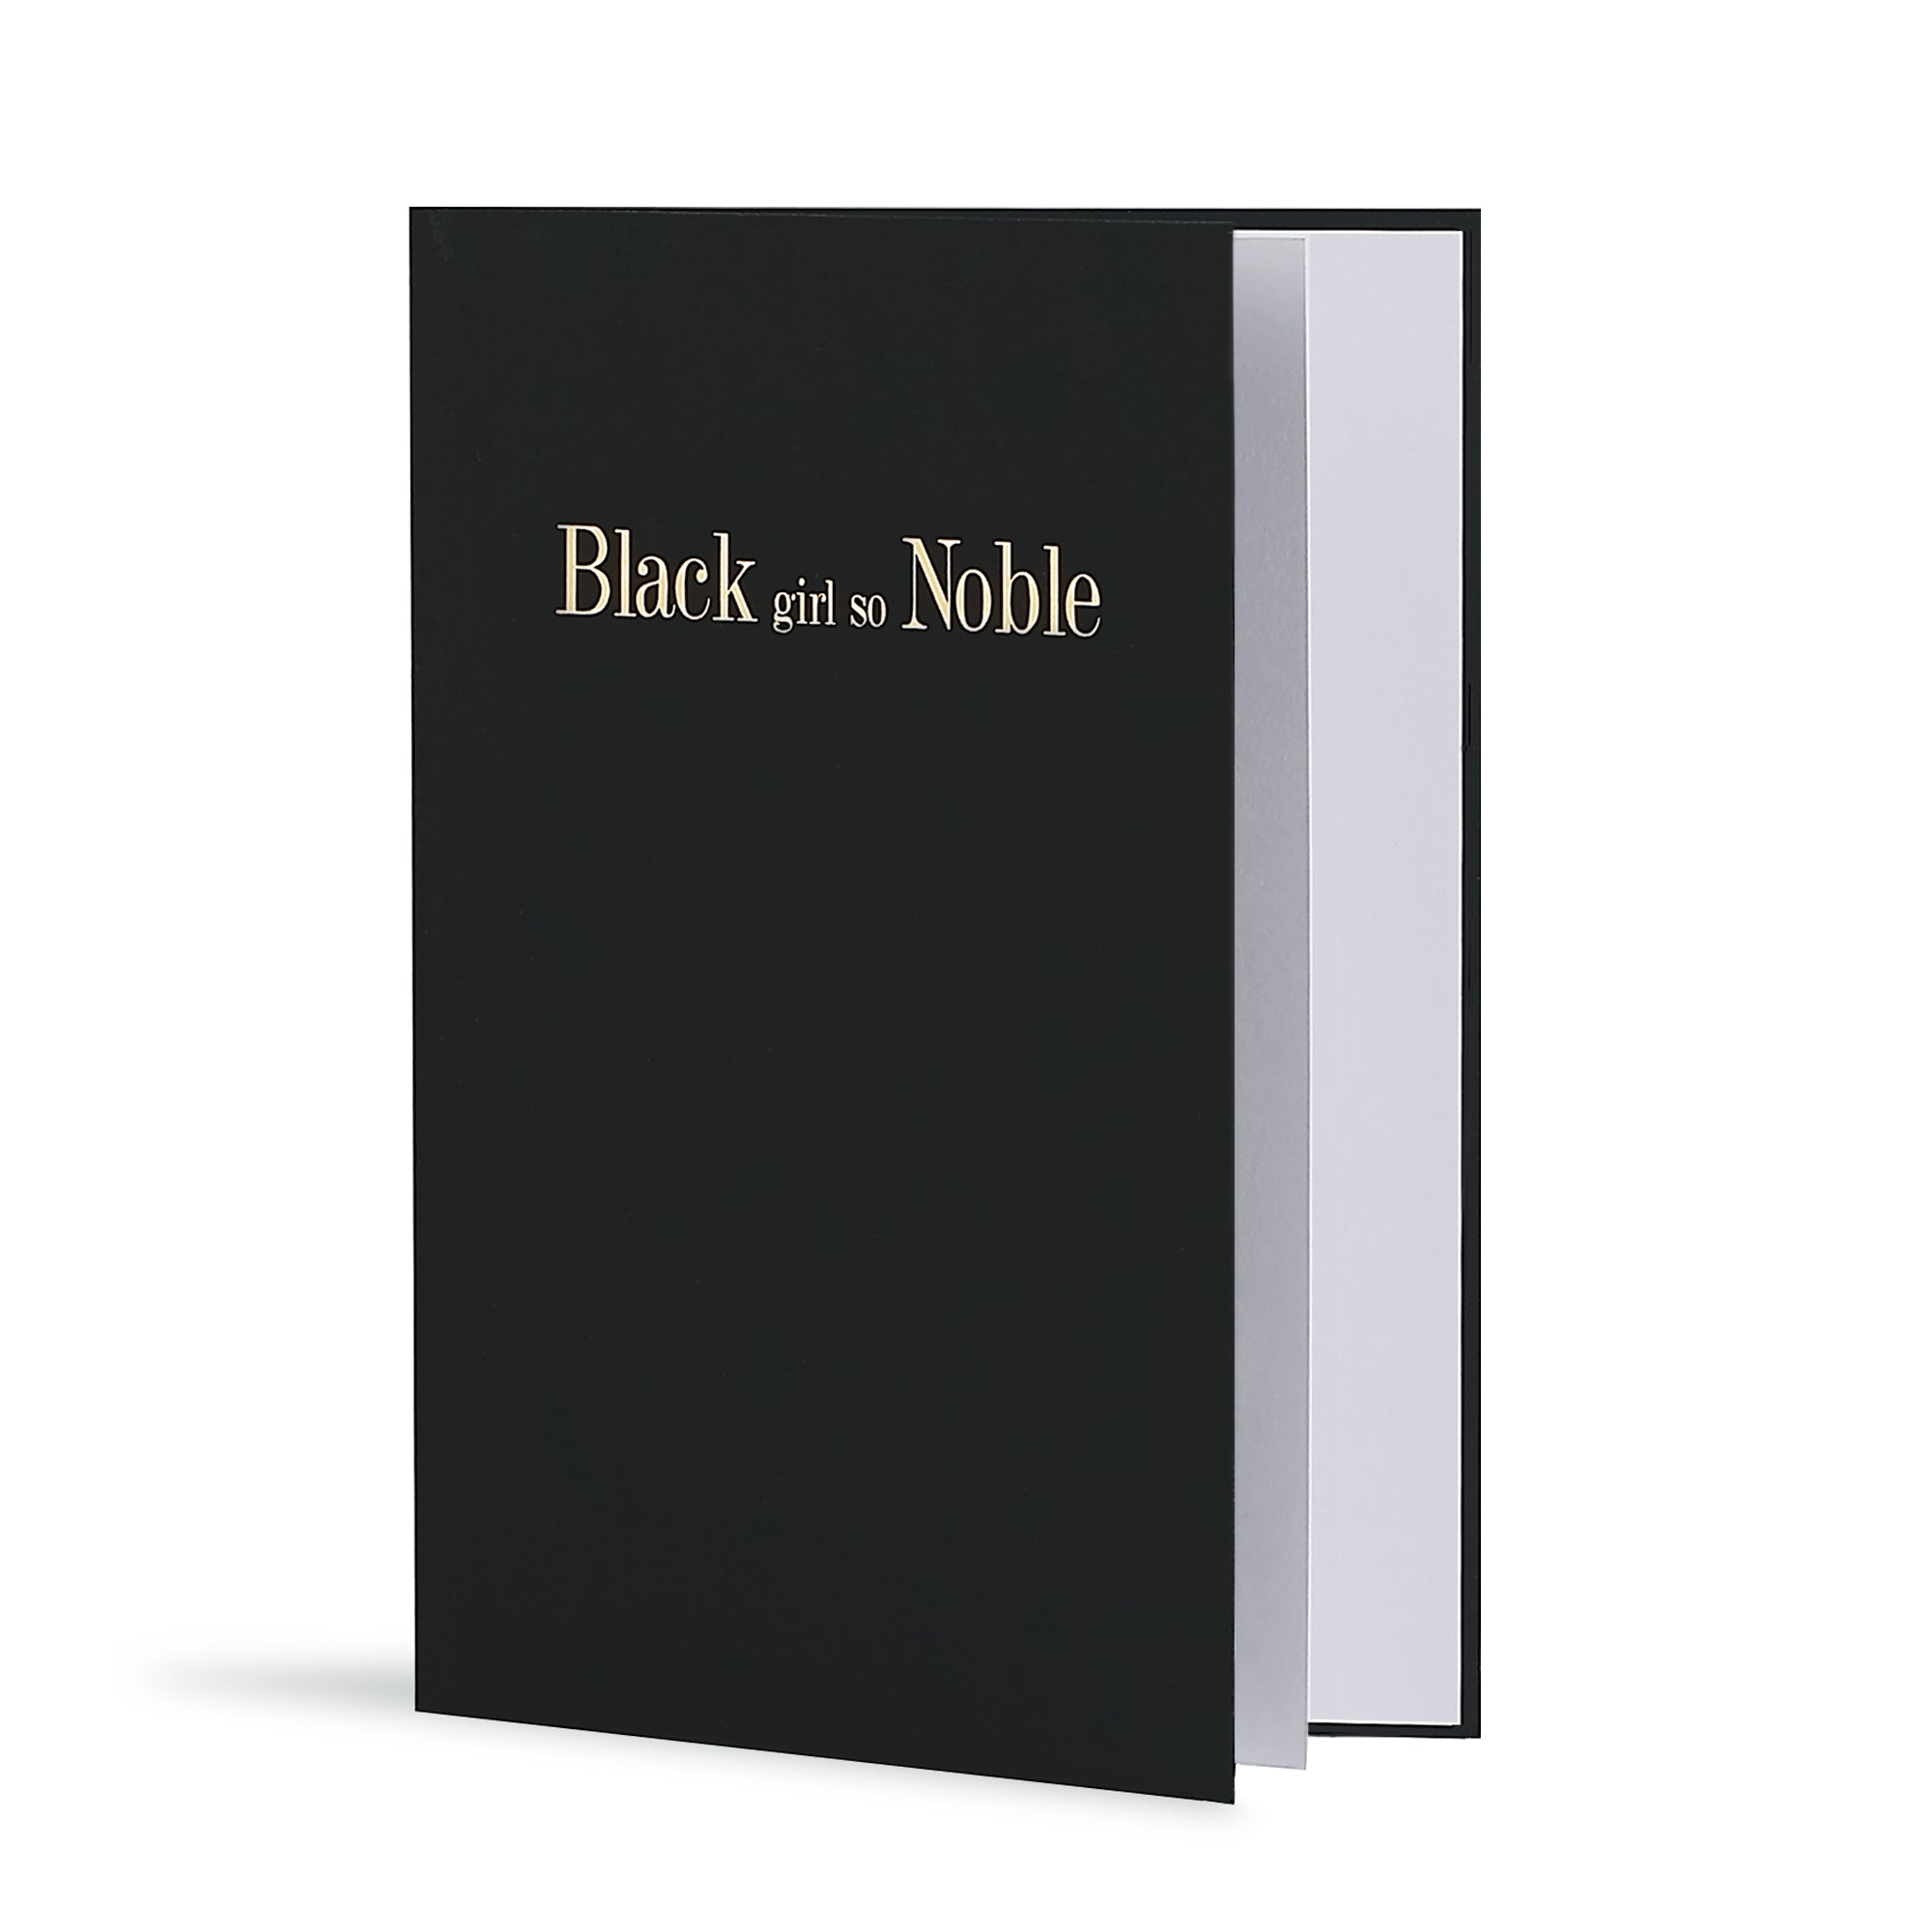 Black Girl So Noble Greeting Card in Black, Side